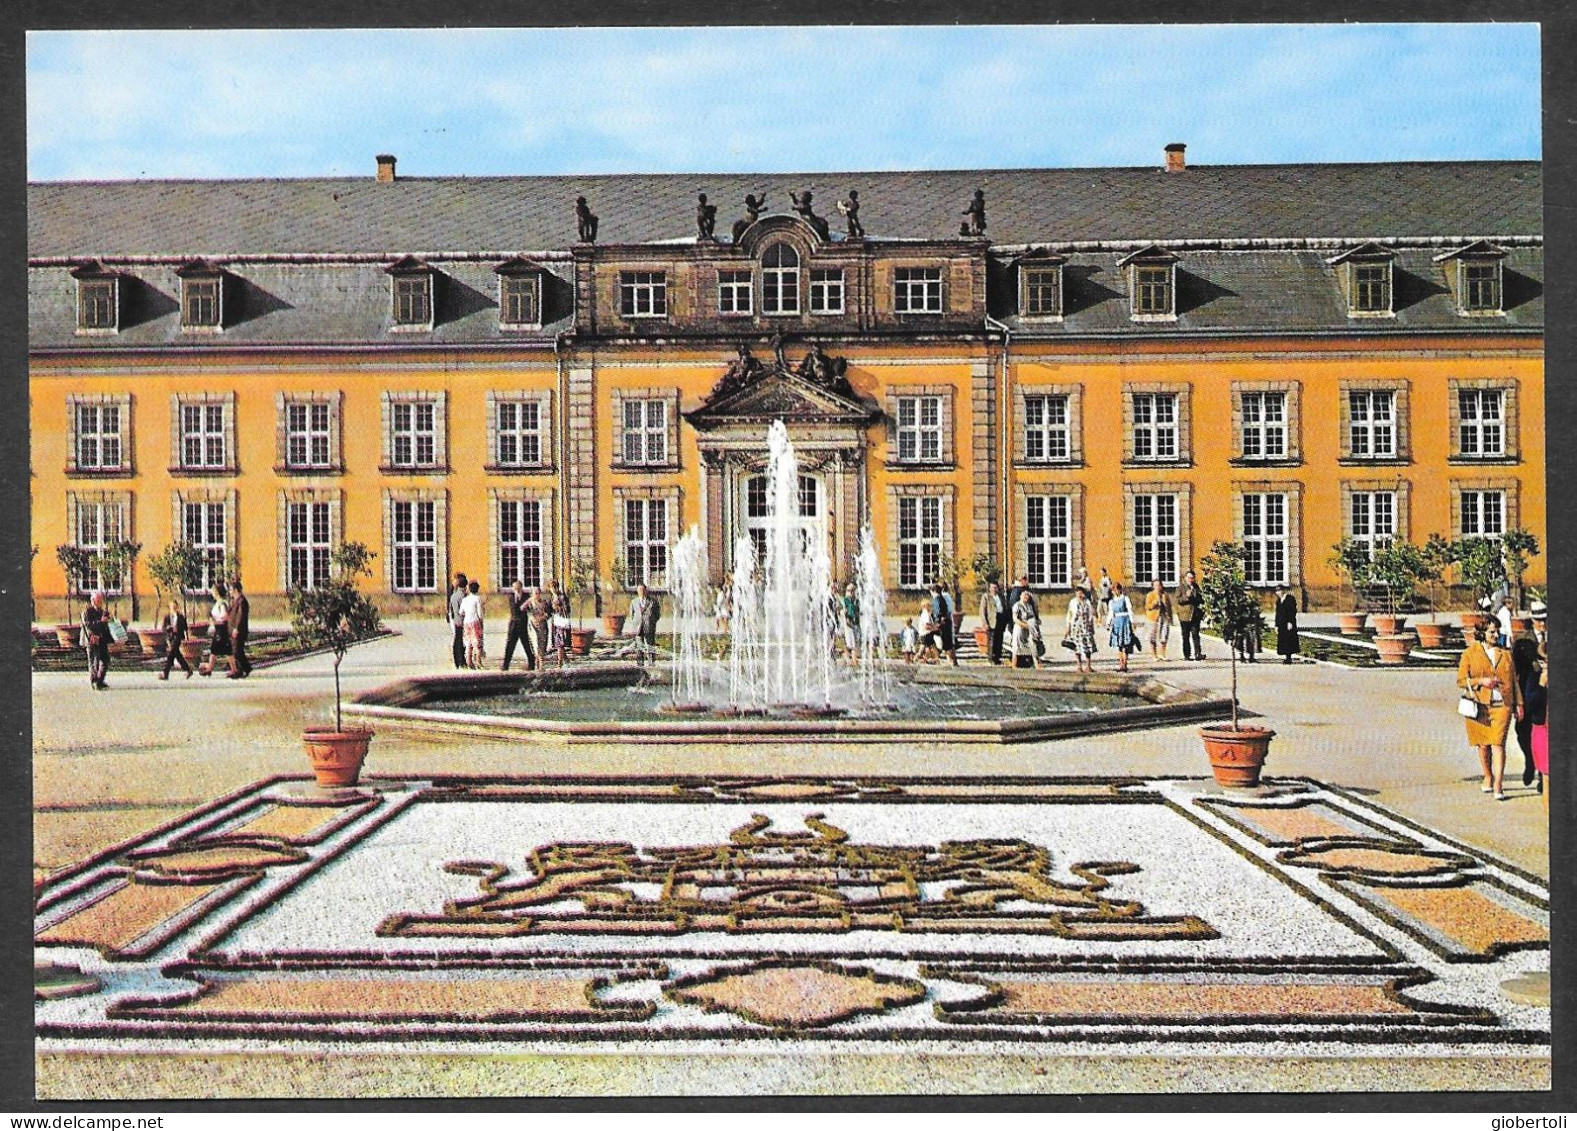 Germania/Germany/Allemagne: Castello, Castle, Château - Schlösser U. Burgen